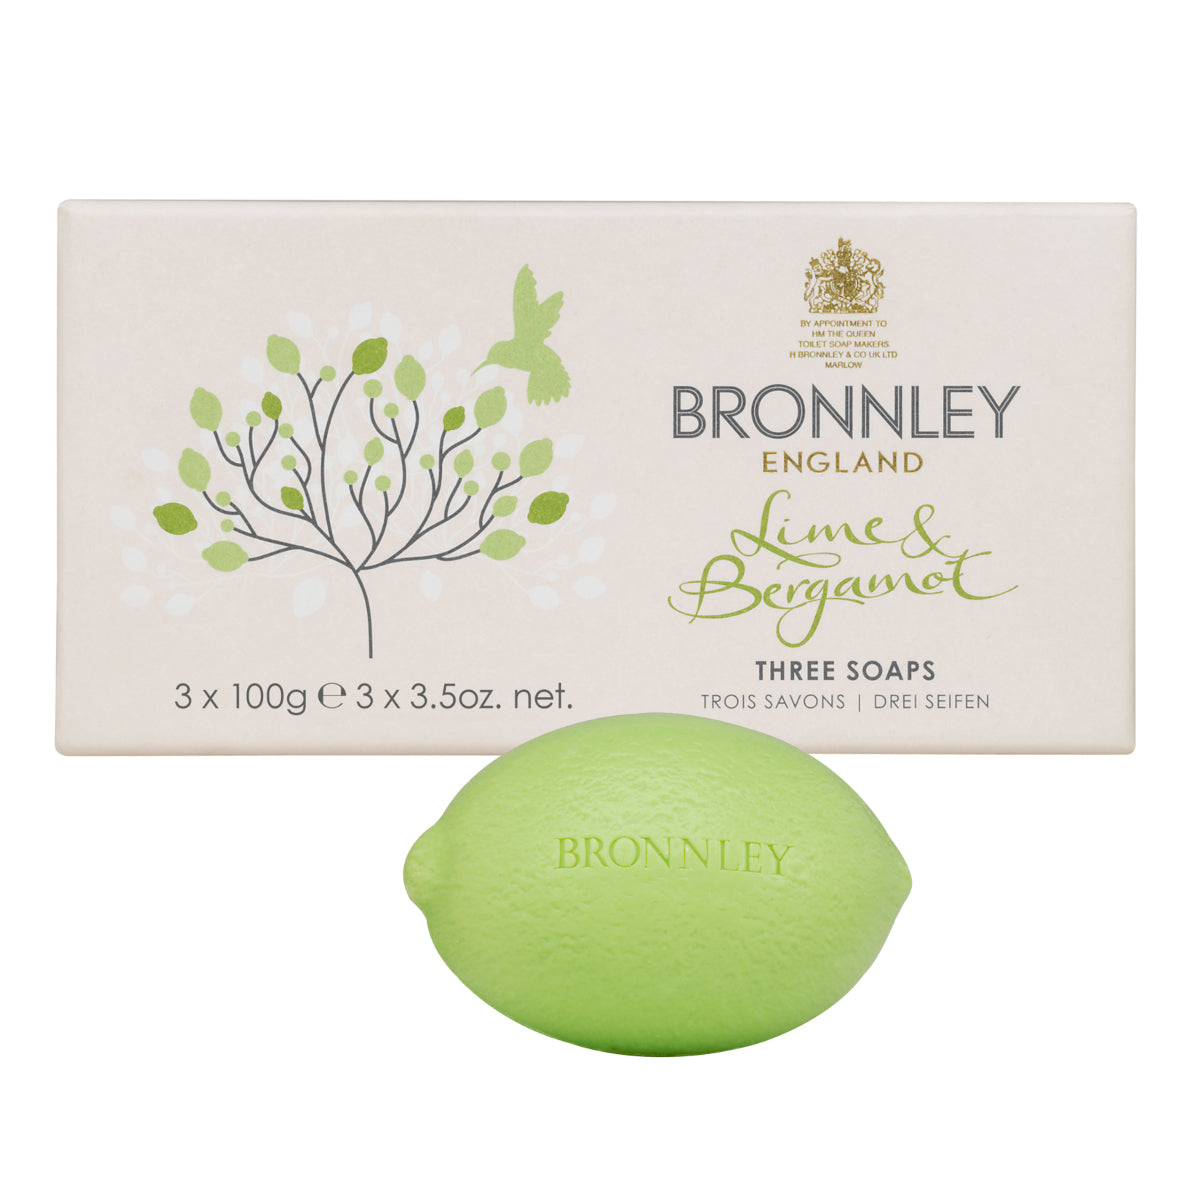 Bronnley Lime & Bergamot Soap - 3x100gm Hand Soap